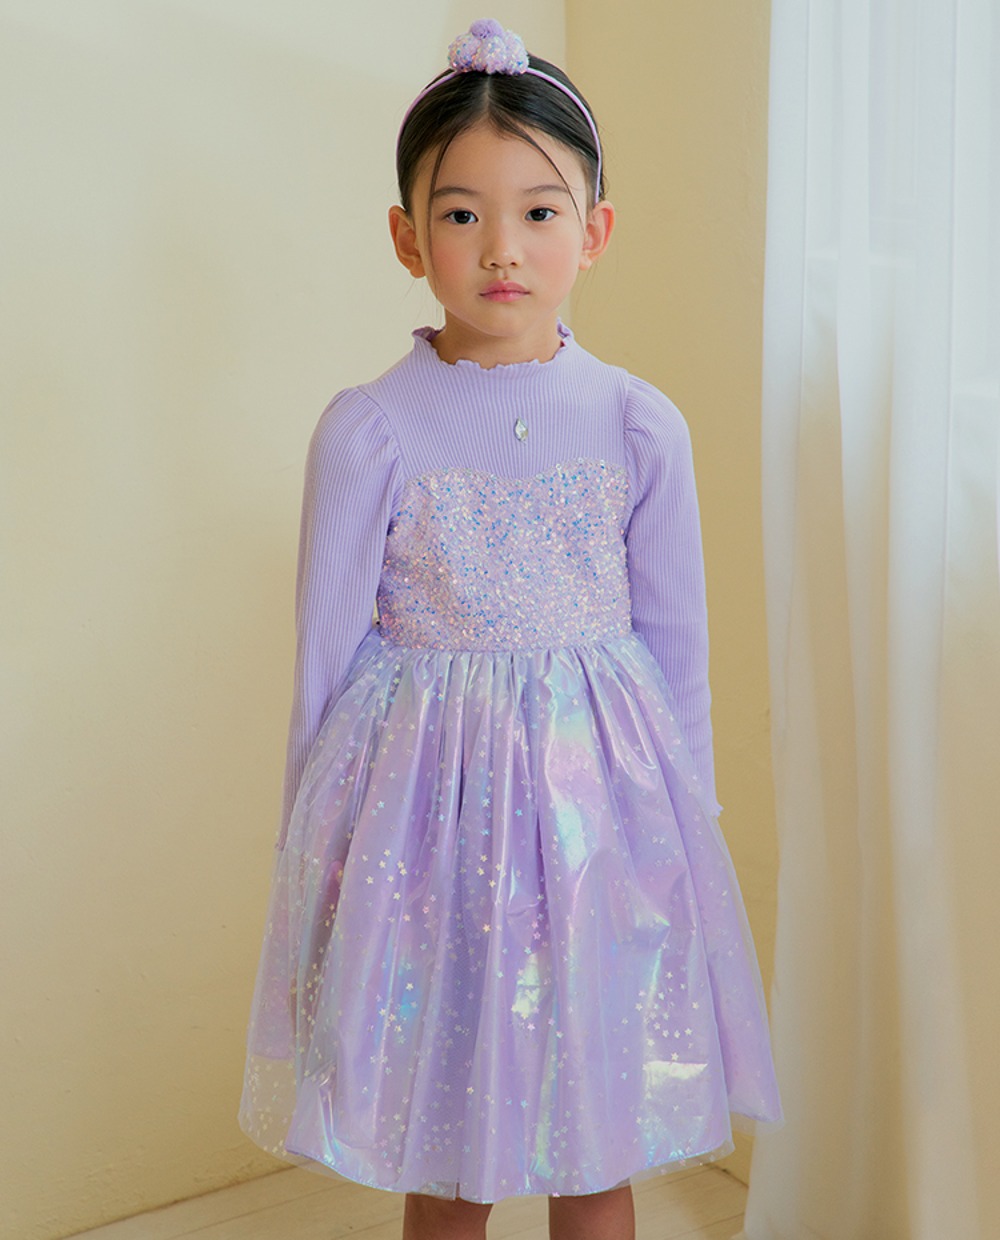 프리미엄 오로라 공주 튜튜 드레스(Purple)